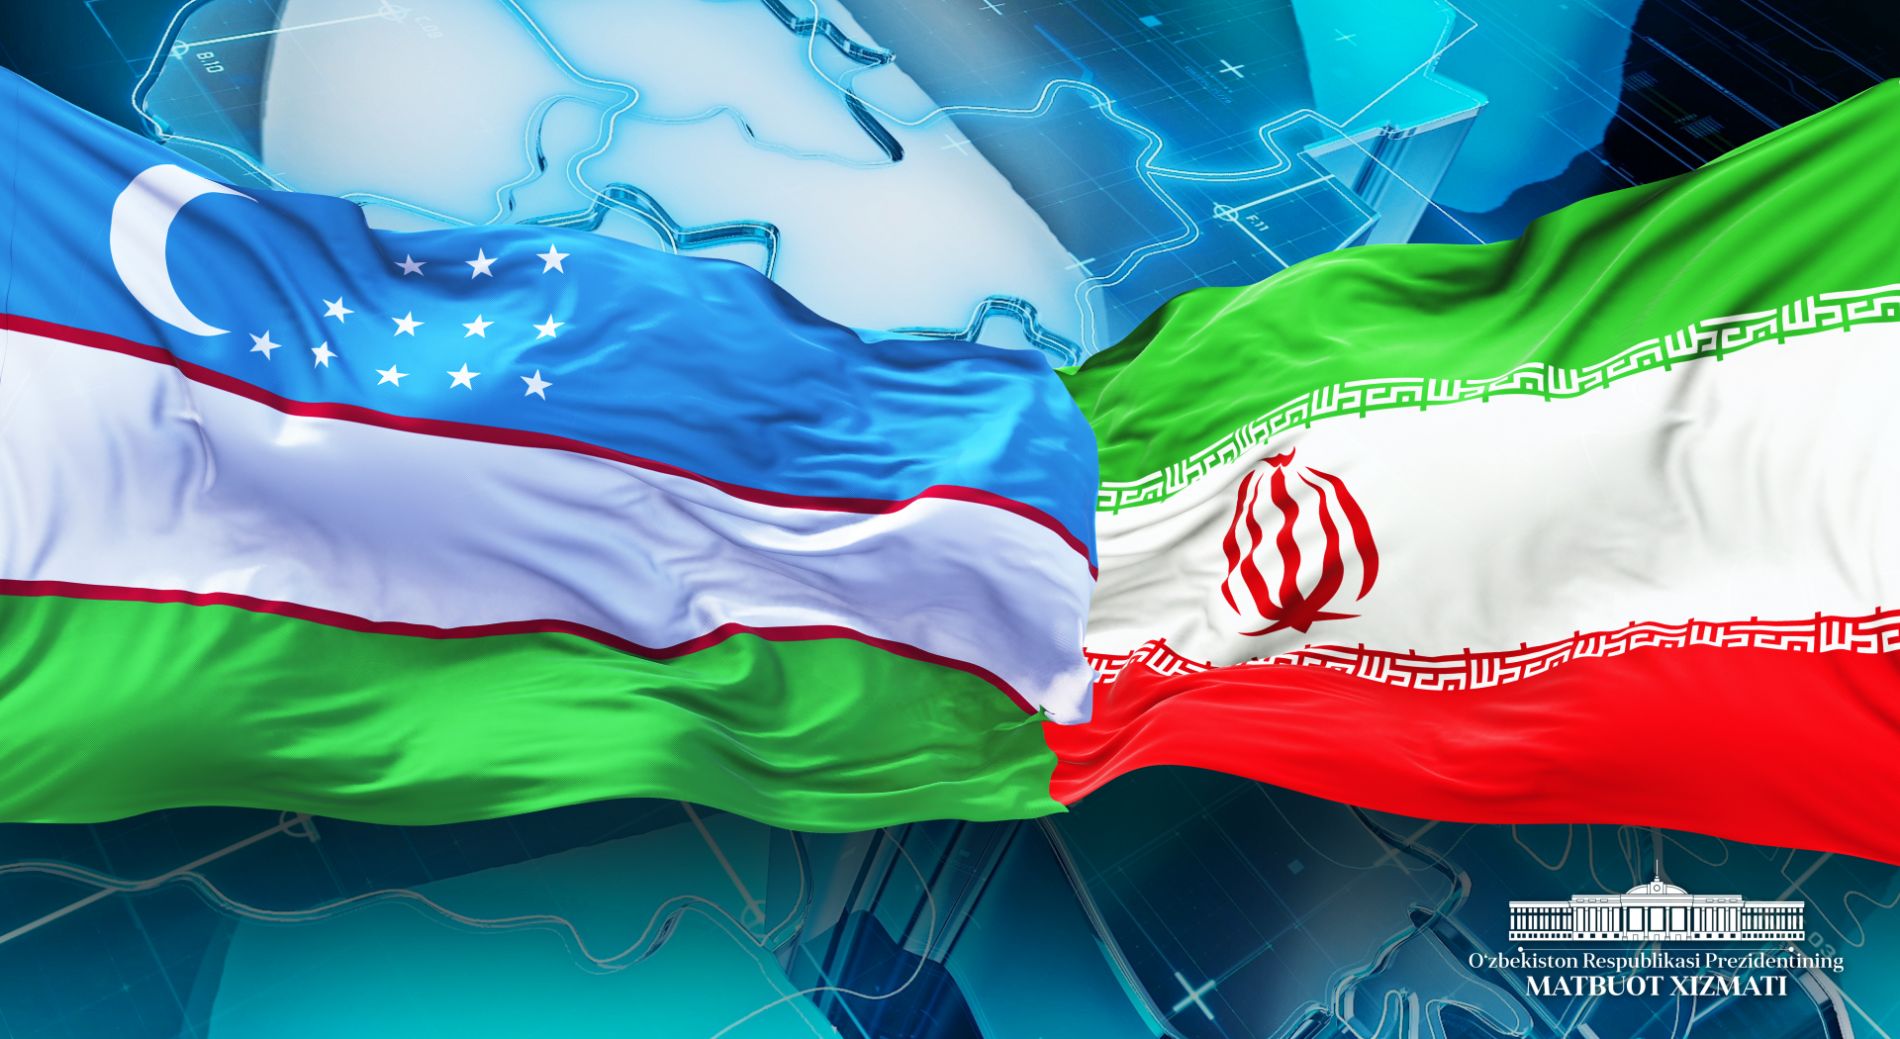 Uzbek-Iranian Business Forum licks off "InnoWeek.uz-2023" 